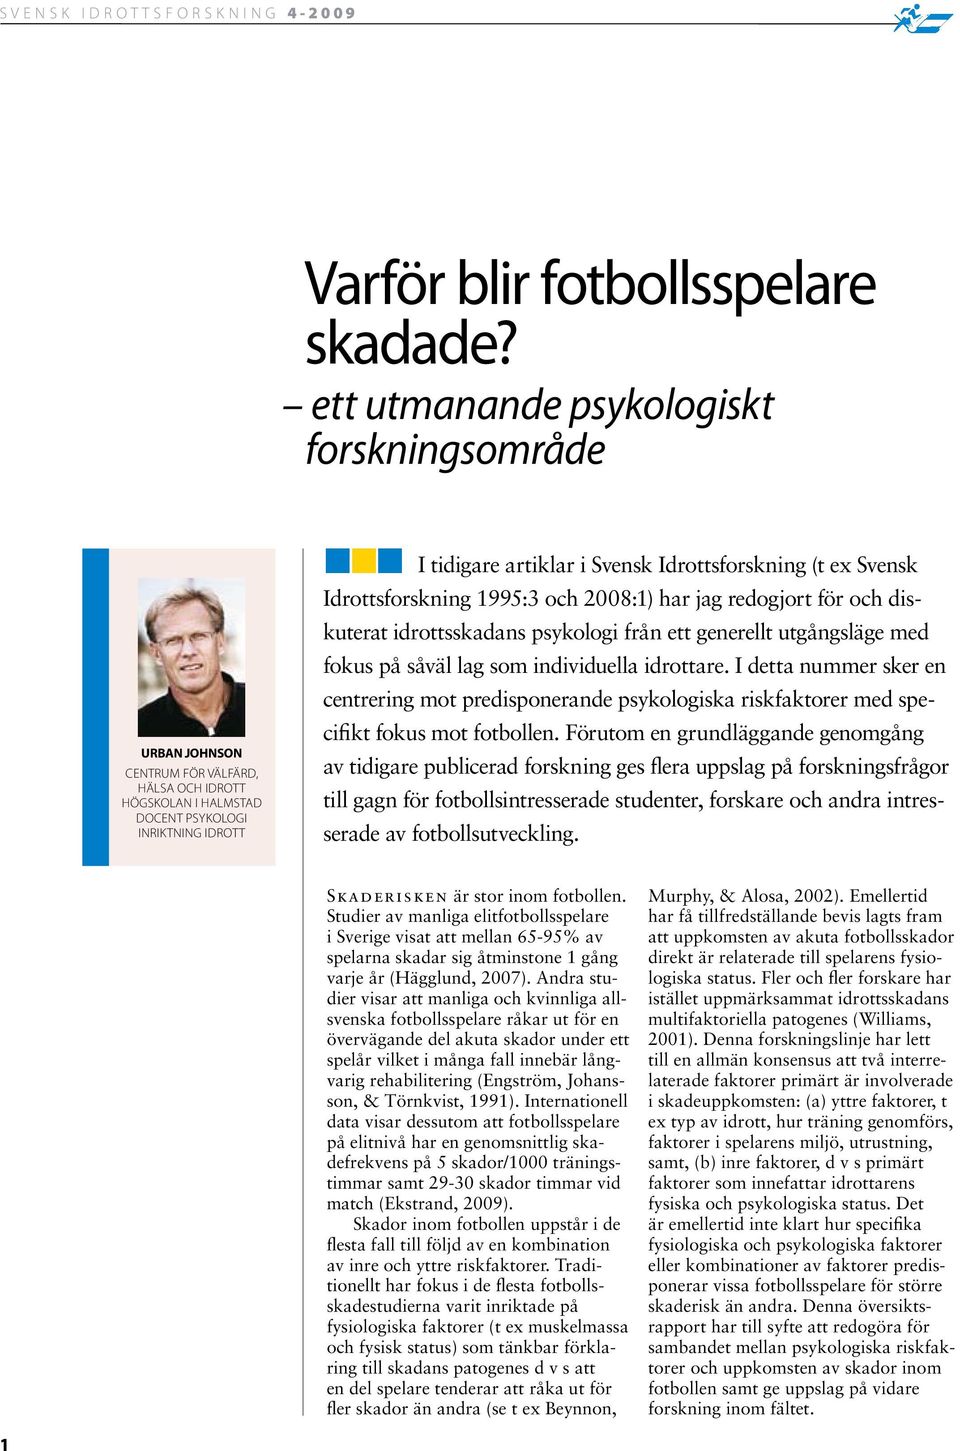 (t ex Svensk Idrottsforskning 1995:3 och 2008:1) har jag redogjort för och diskuterat idrottsskadans psykologi från ett generellt utgångsläge med fokus på såväl lag som individuella idrottare.